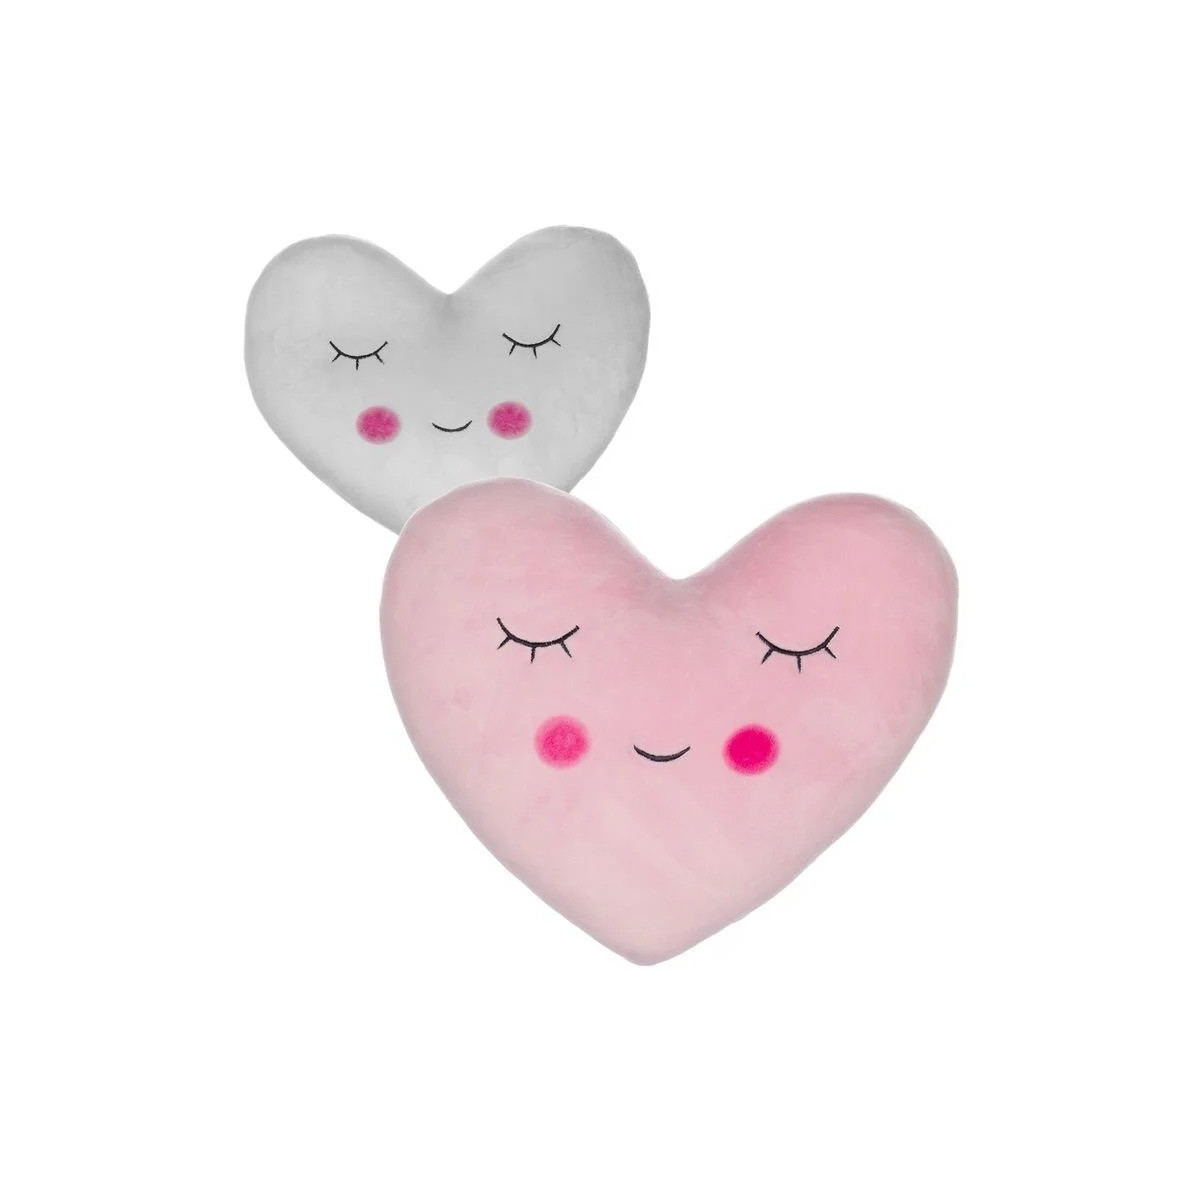 Cojín con forma de corazón en dos colores rosa y gris